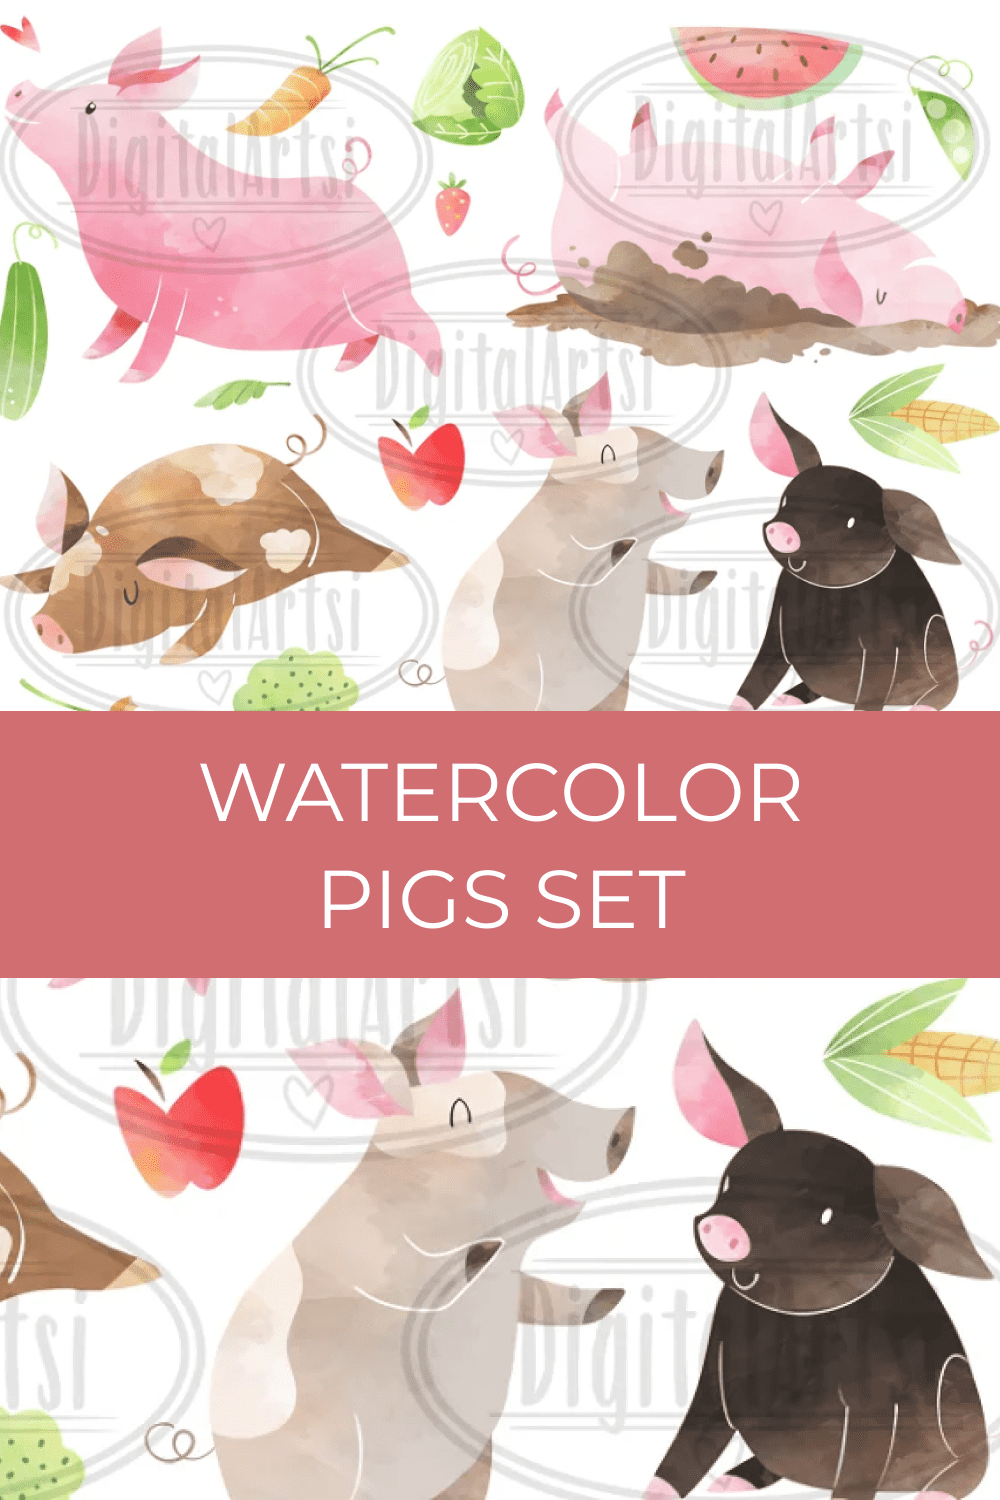 04 watercolor pigs set 1000h1500